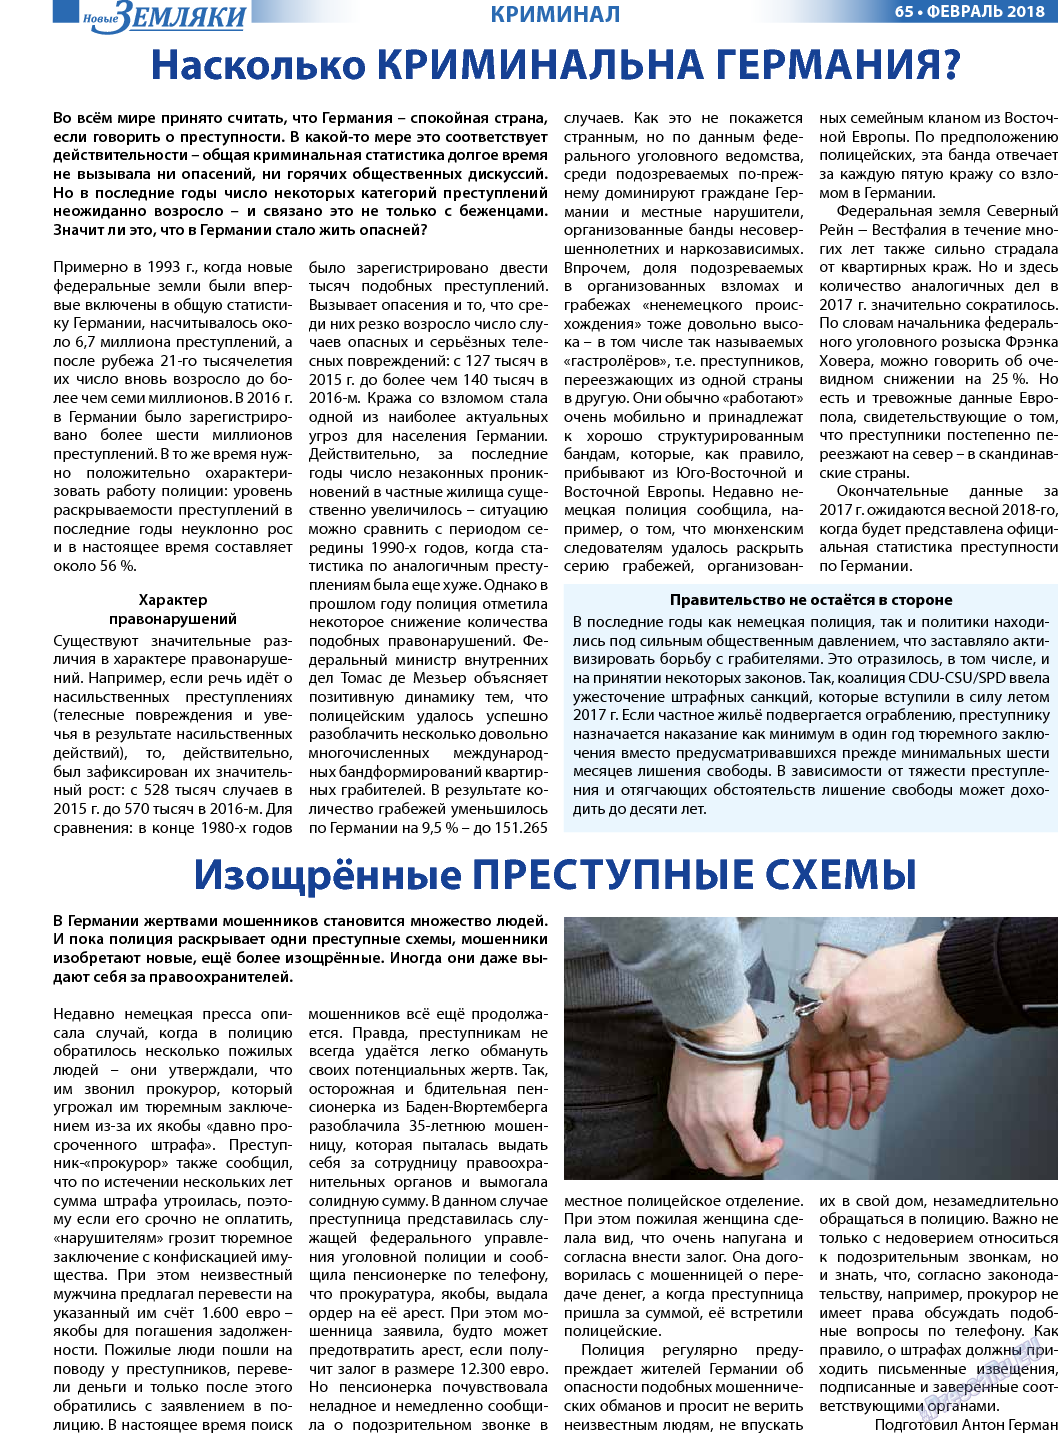 Новые Земляки, газета. 2018 №2 стр.65